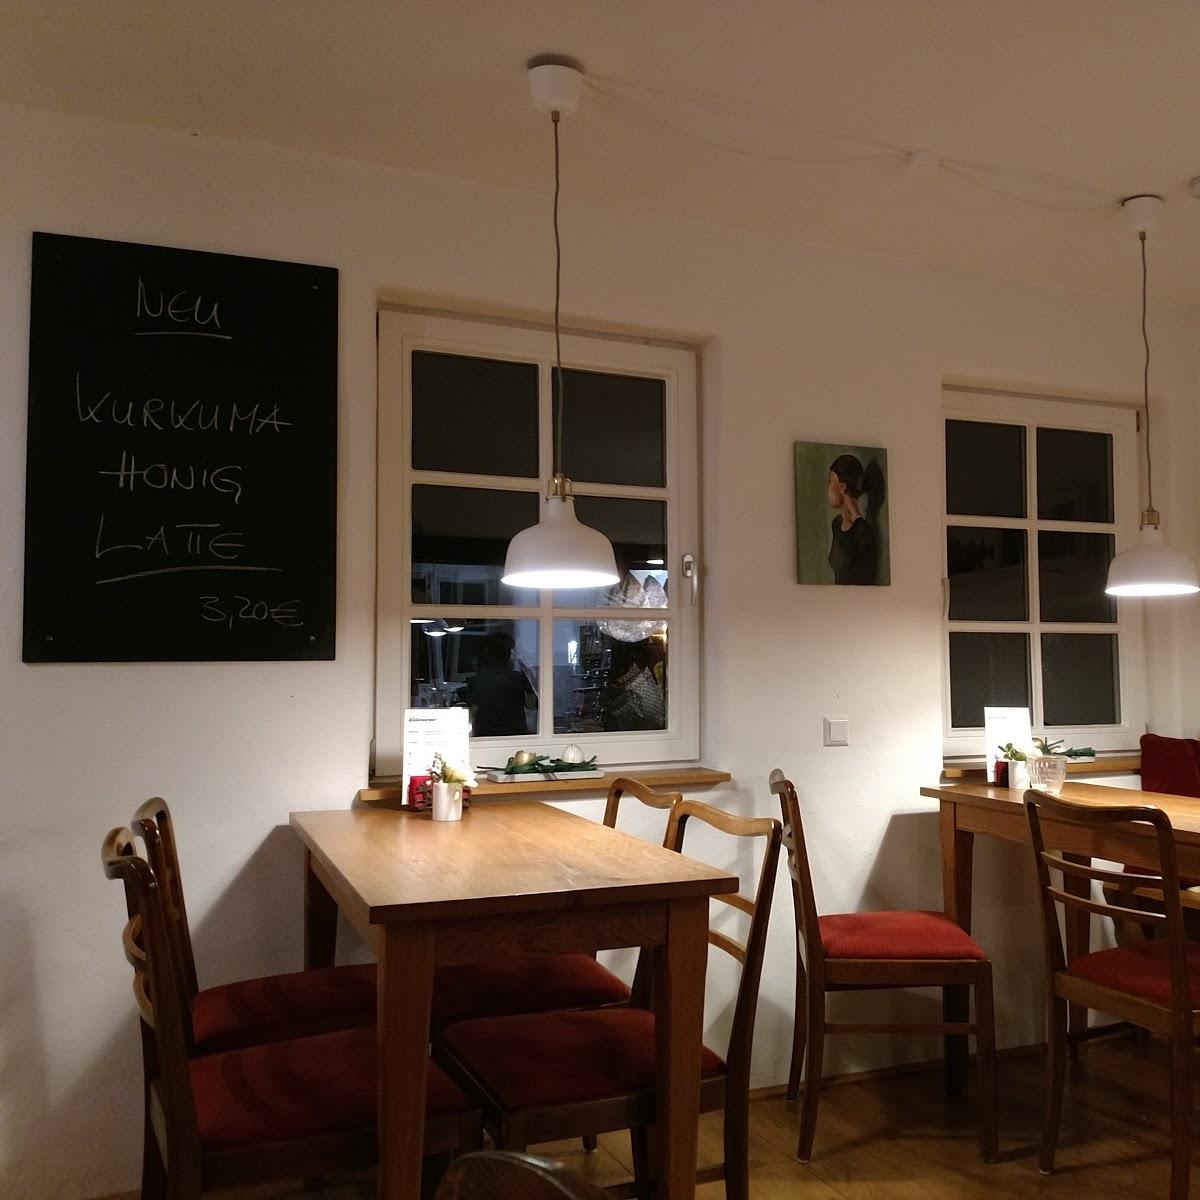 Restaurant "Café am Roten Meer" in Knittlingen